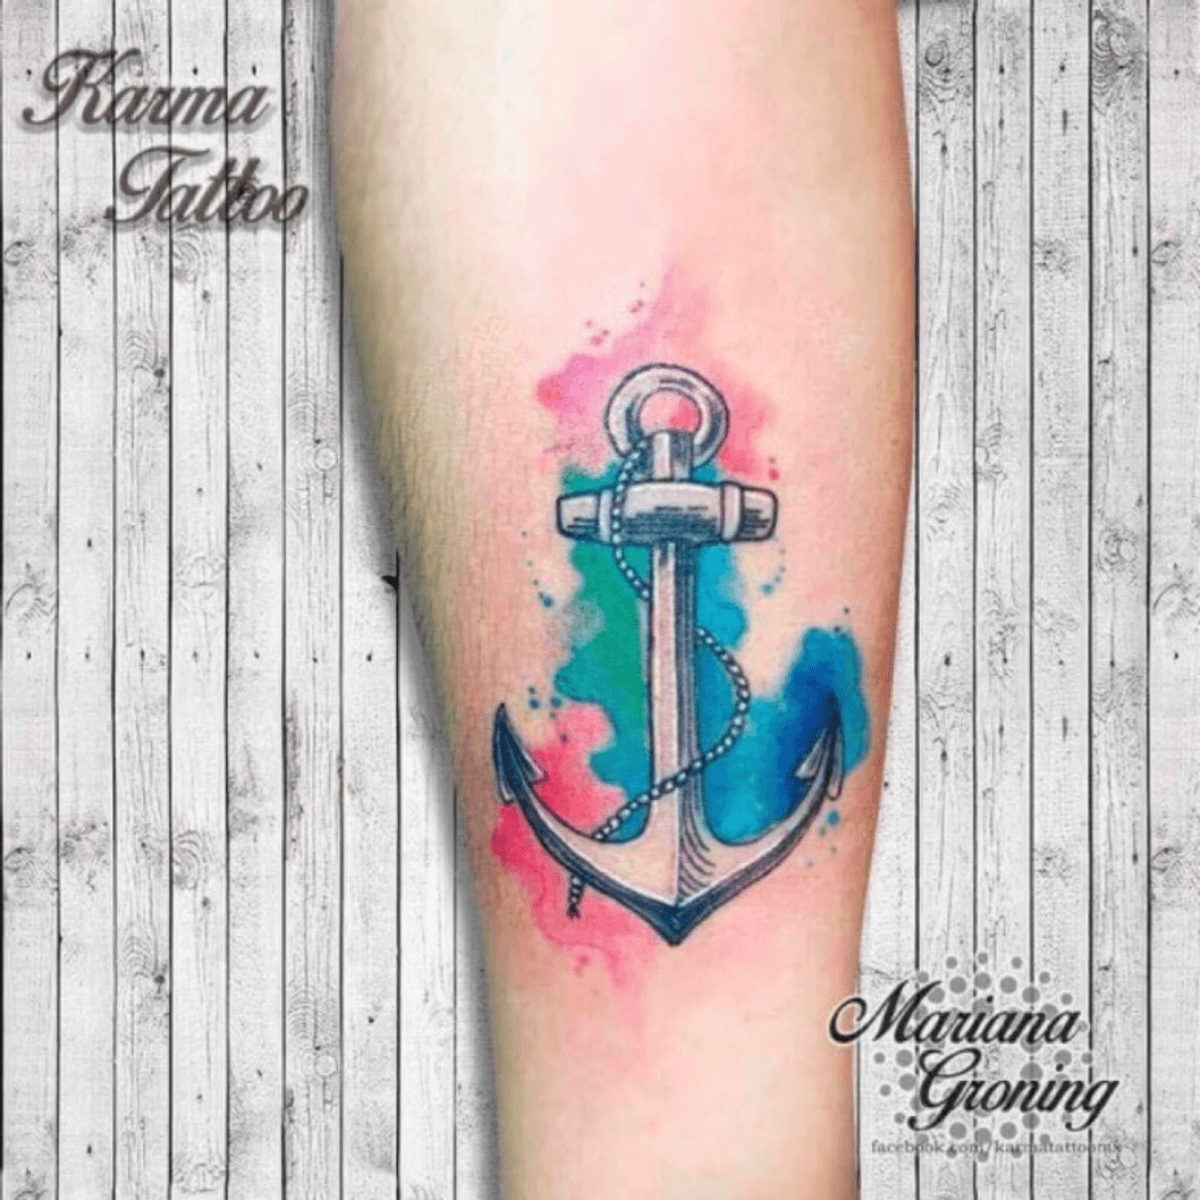 Tattoo uploaded by Mariana Groning • Watercolor anchor tattoo, tatuaje ...